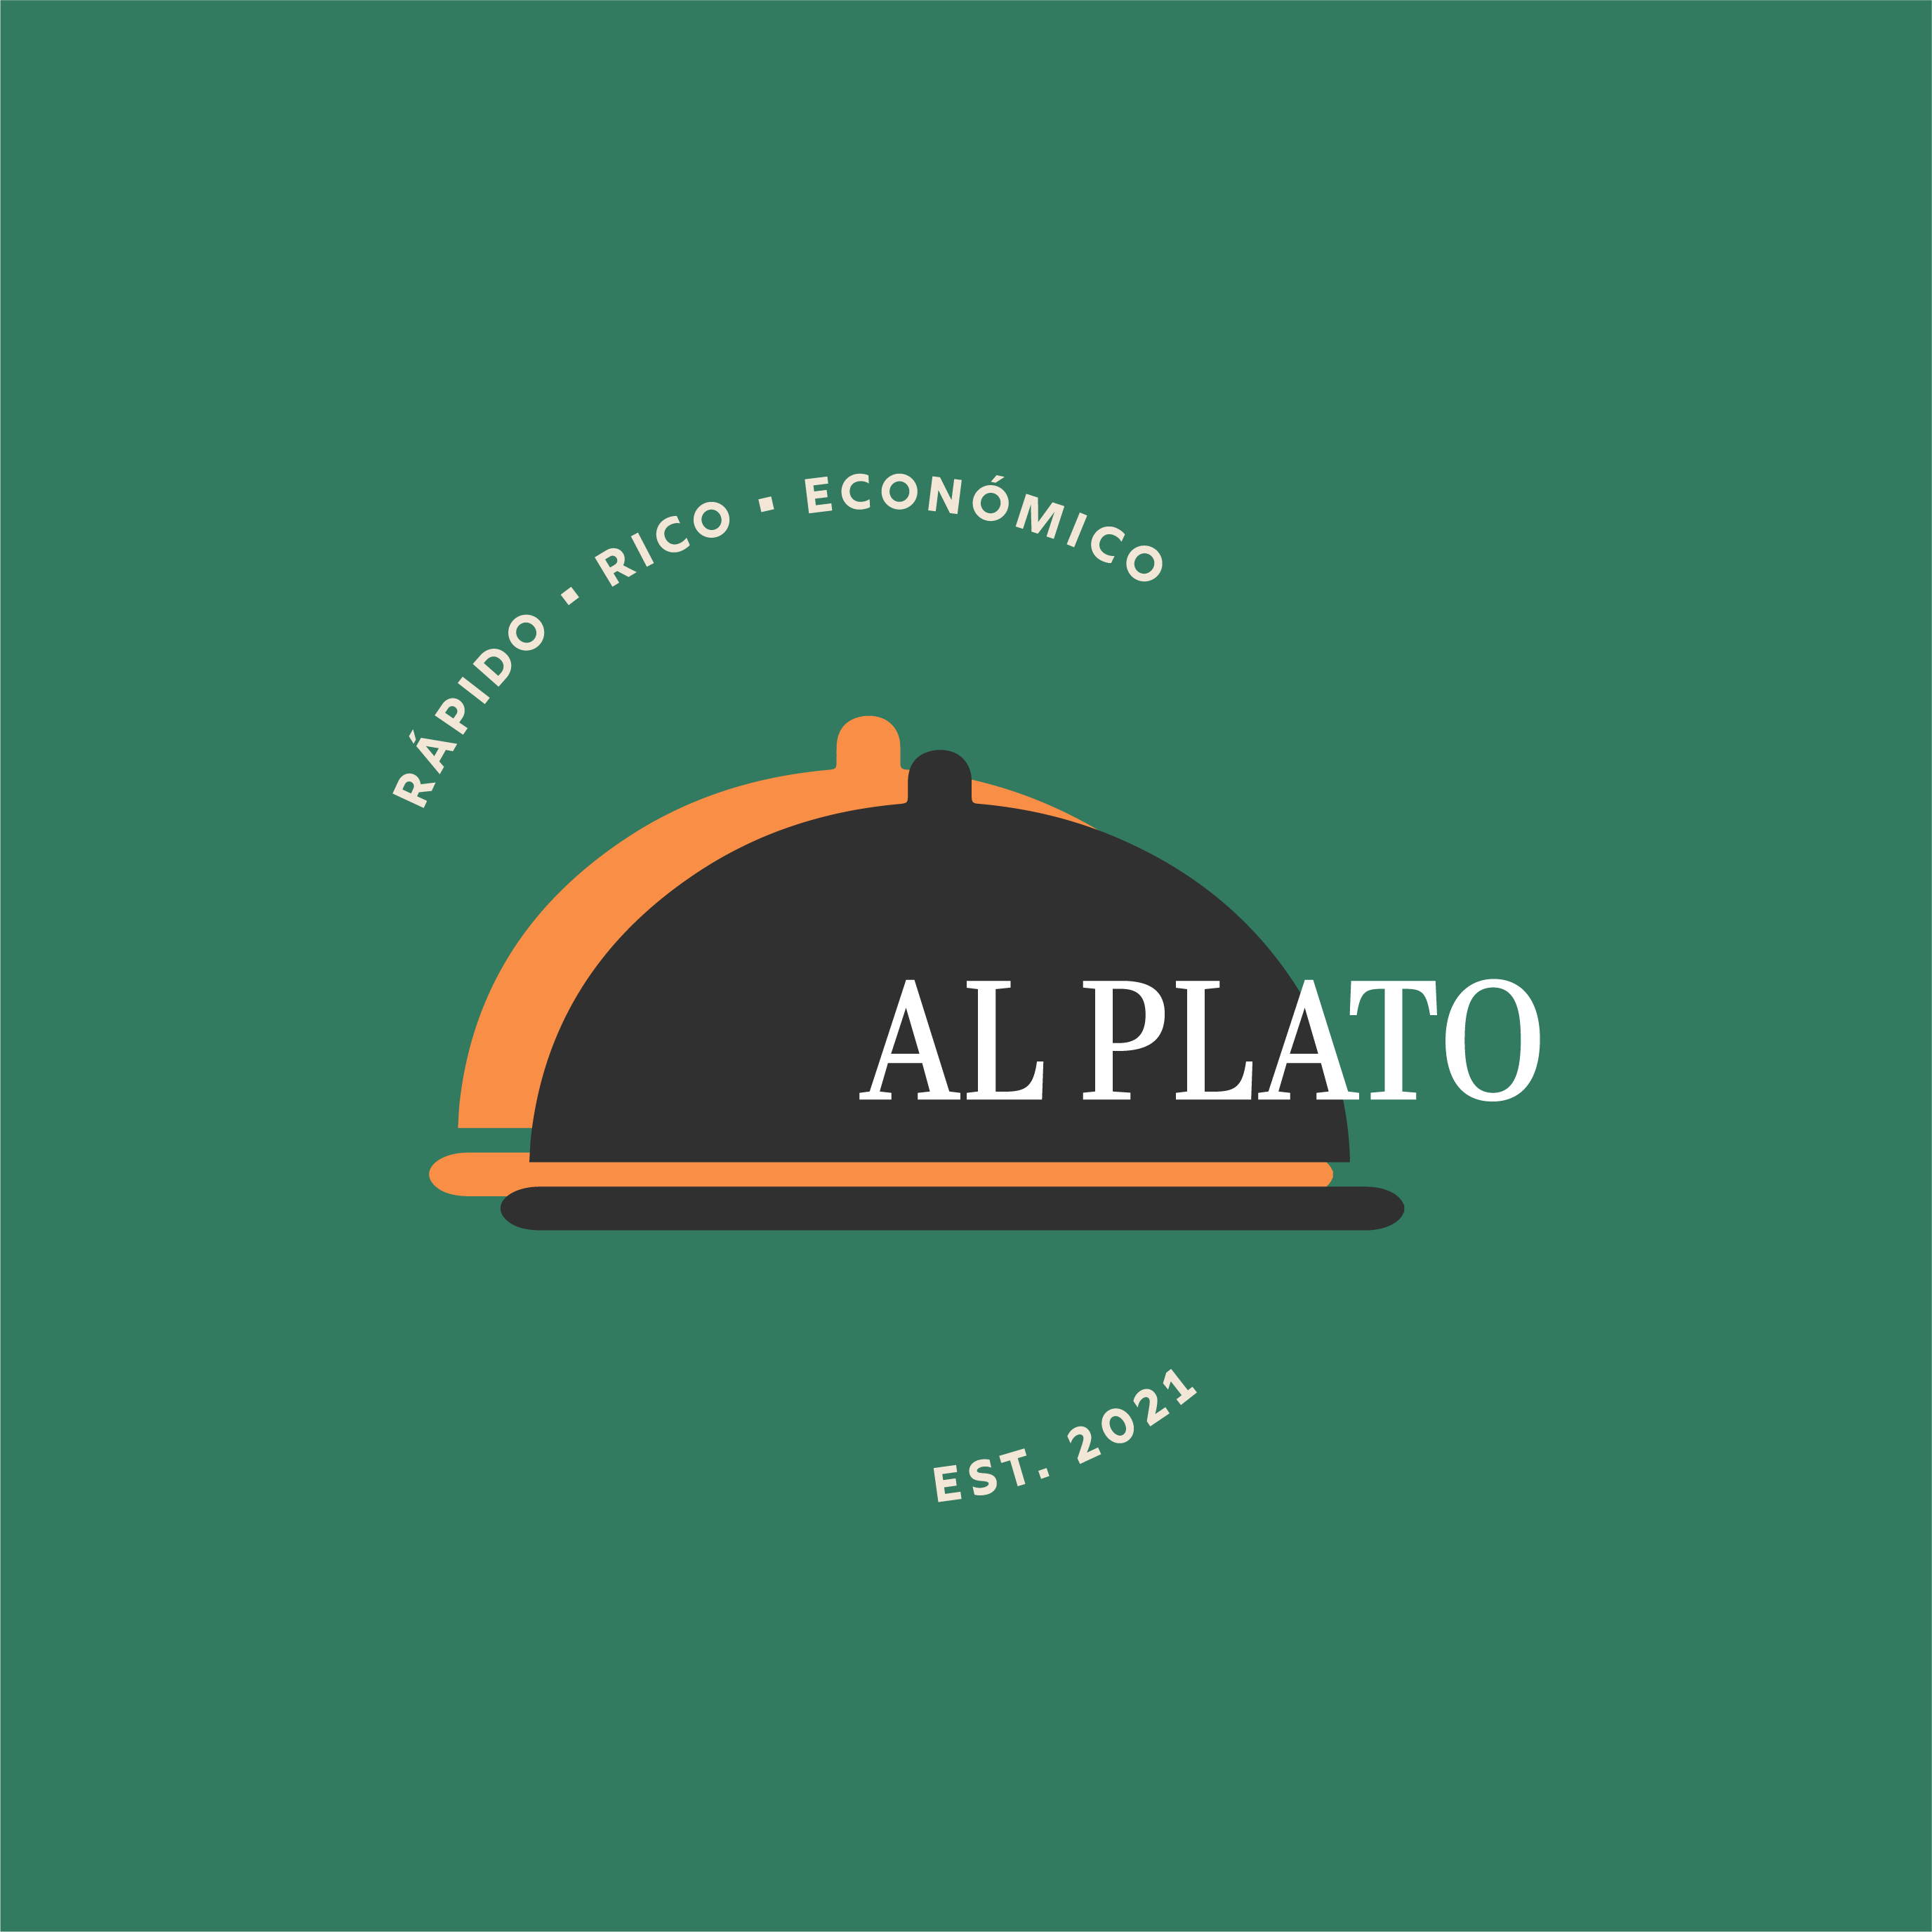 Al Plato Application